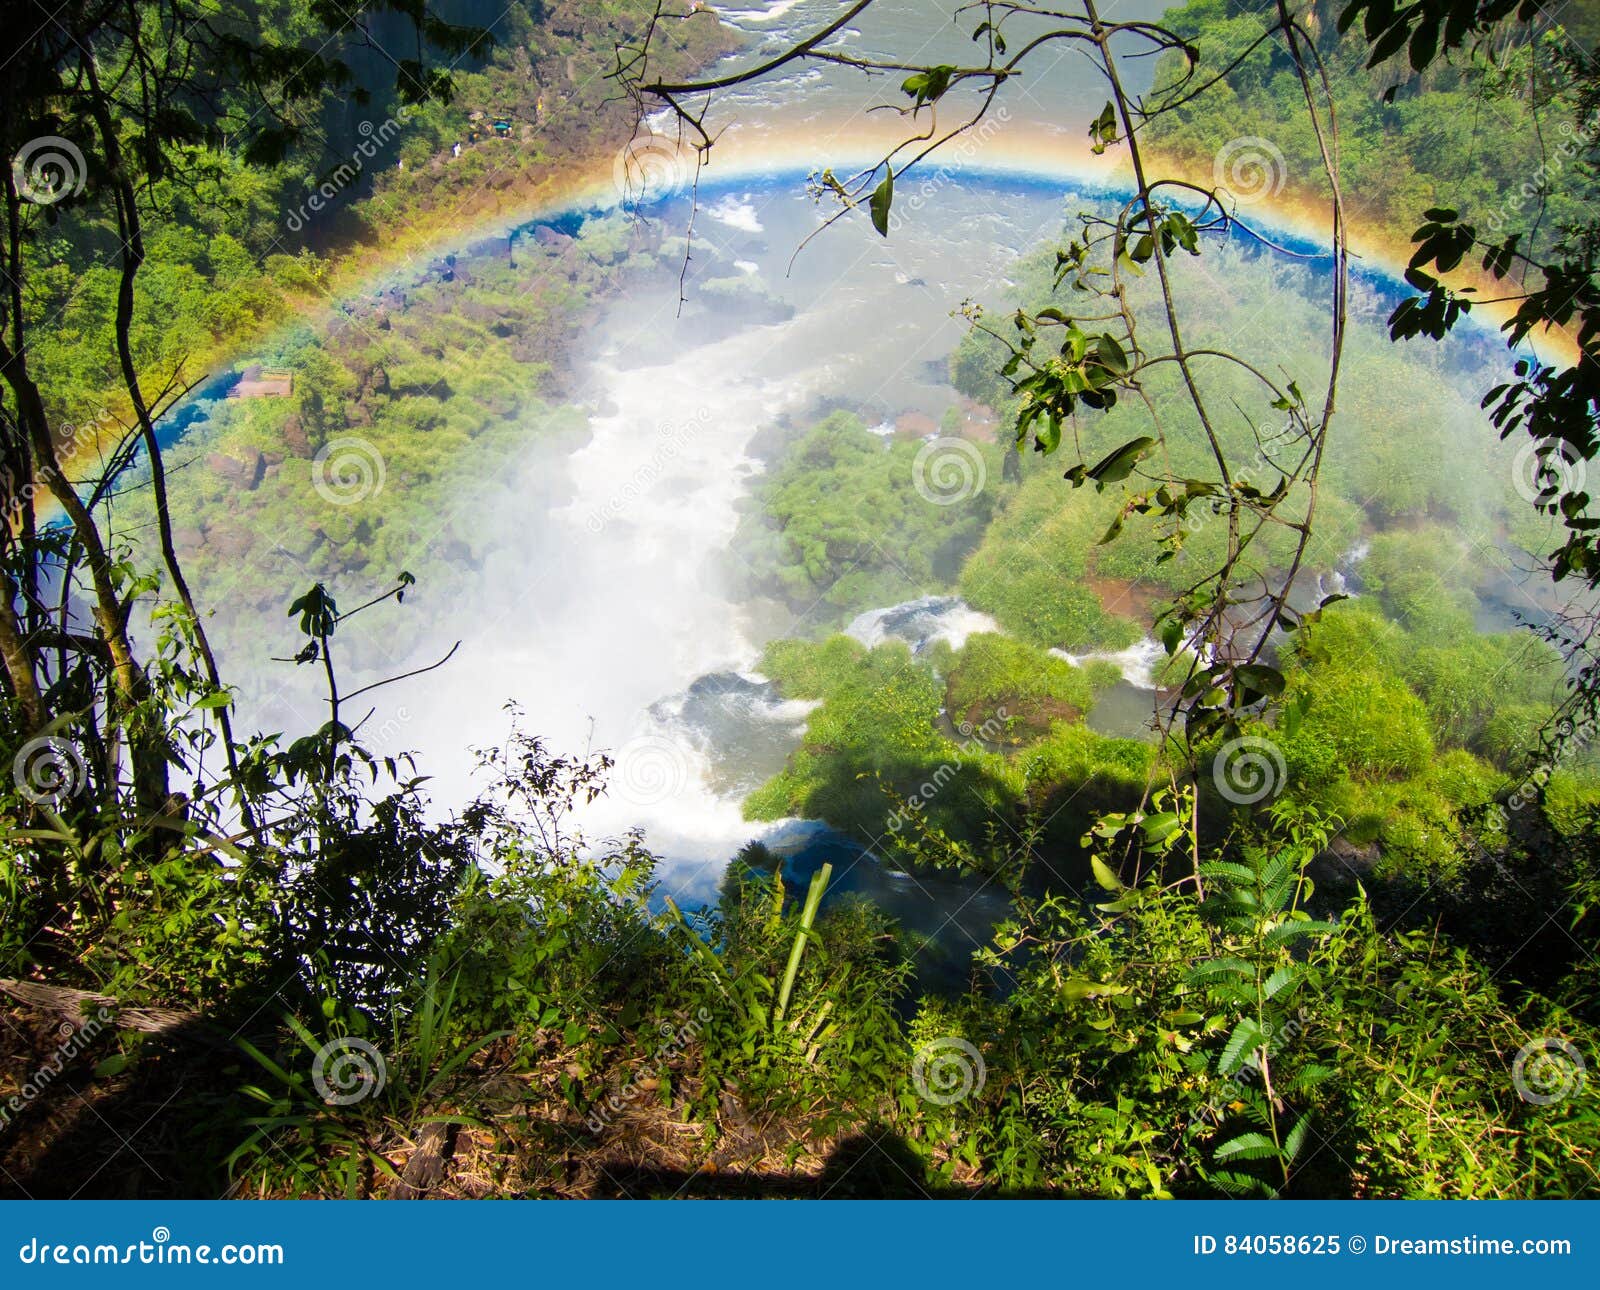 view of the water falls in cataratas del iguazu park